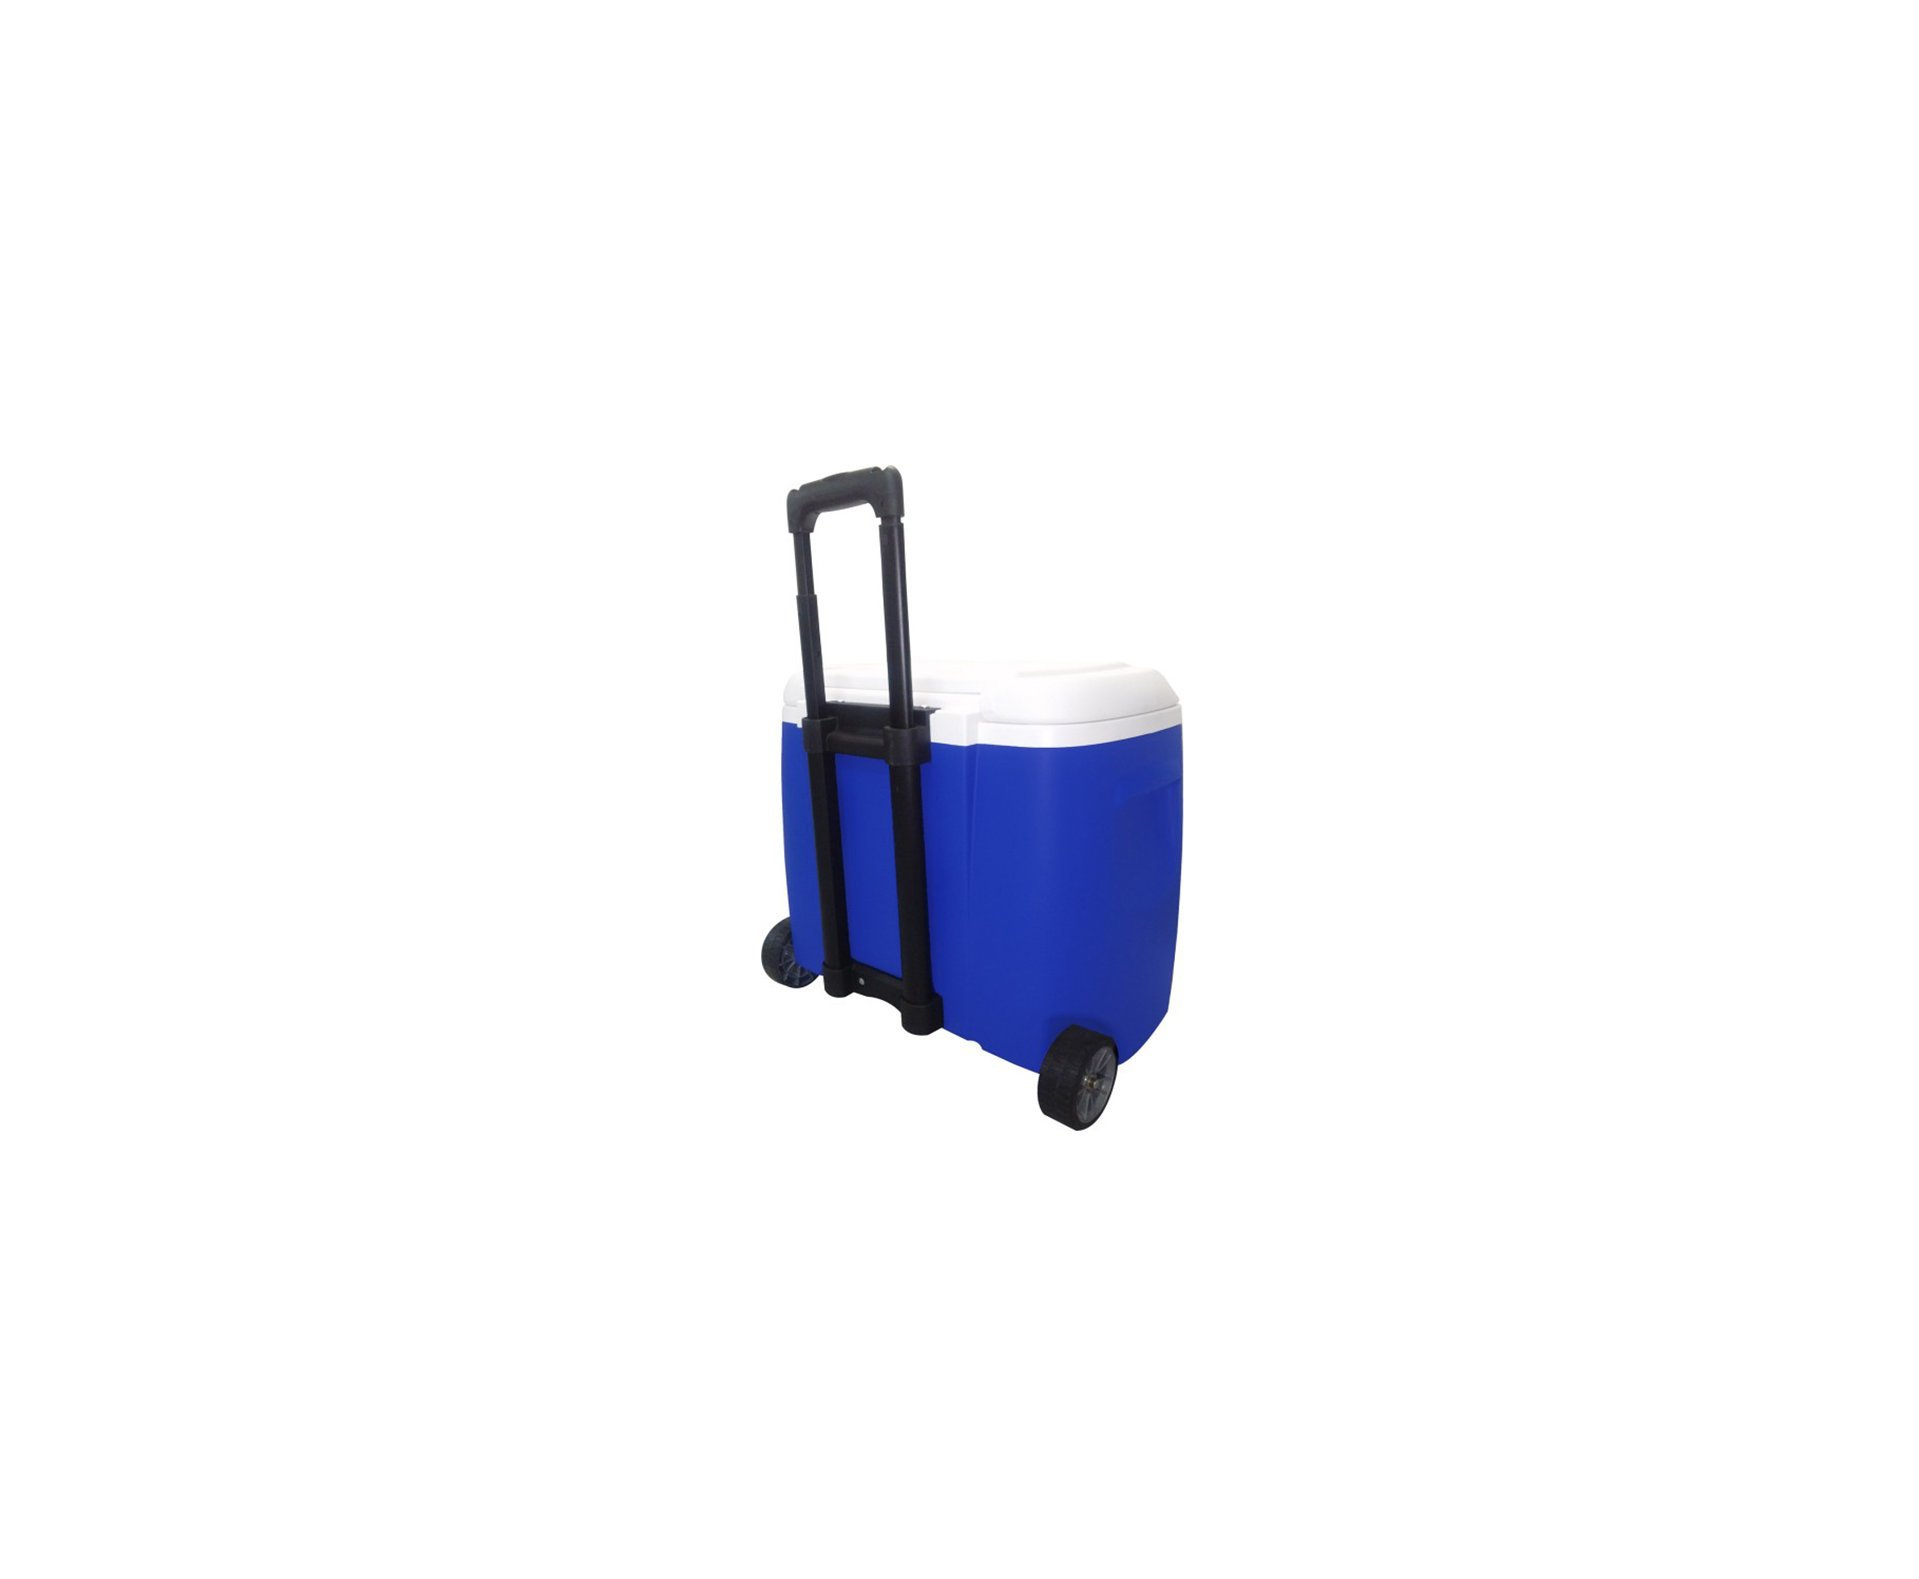 Caixa Termica Igloo Usa Cooler 28qt Com Roda - Azul